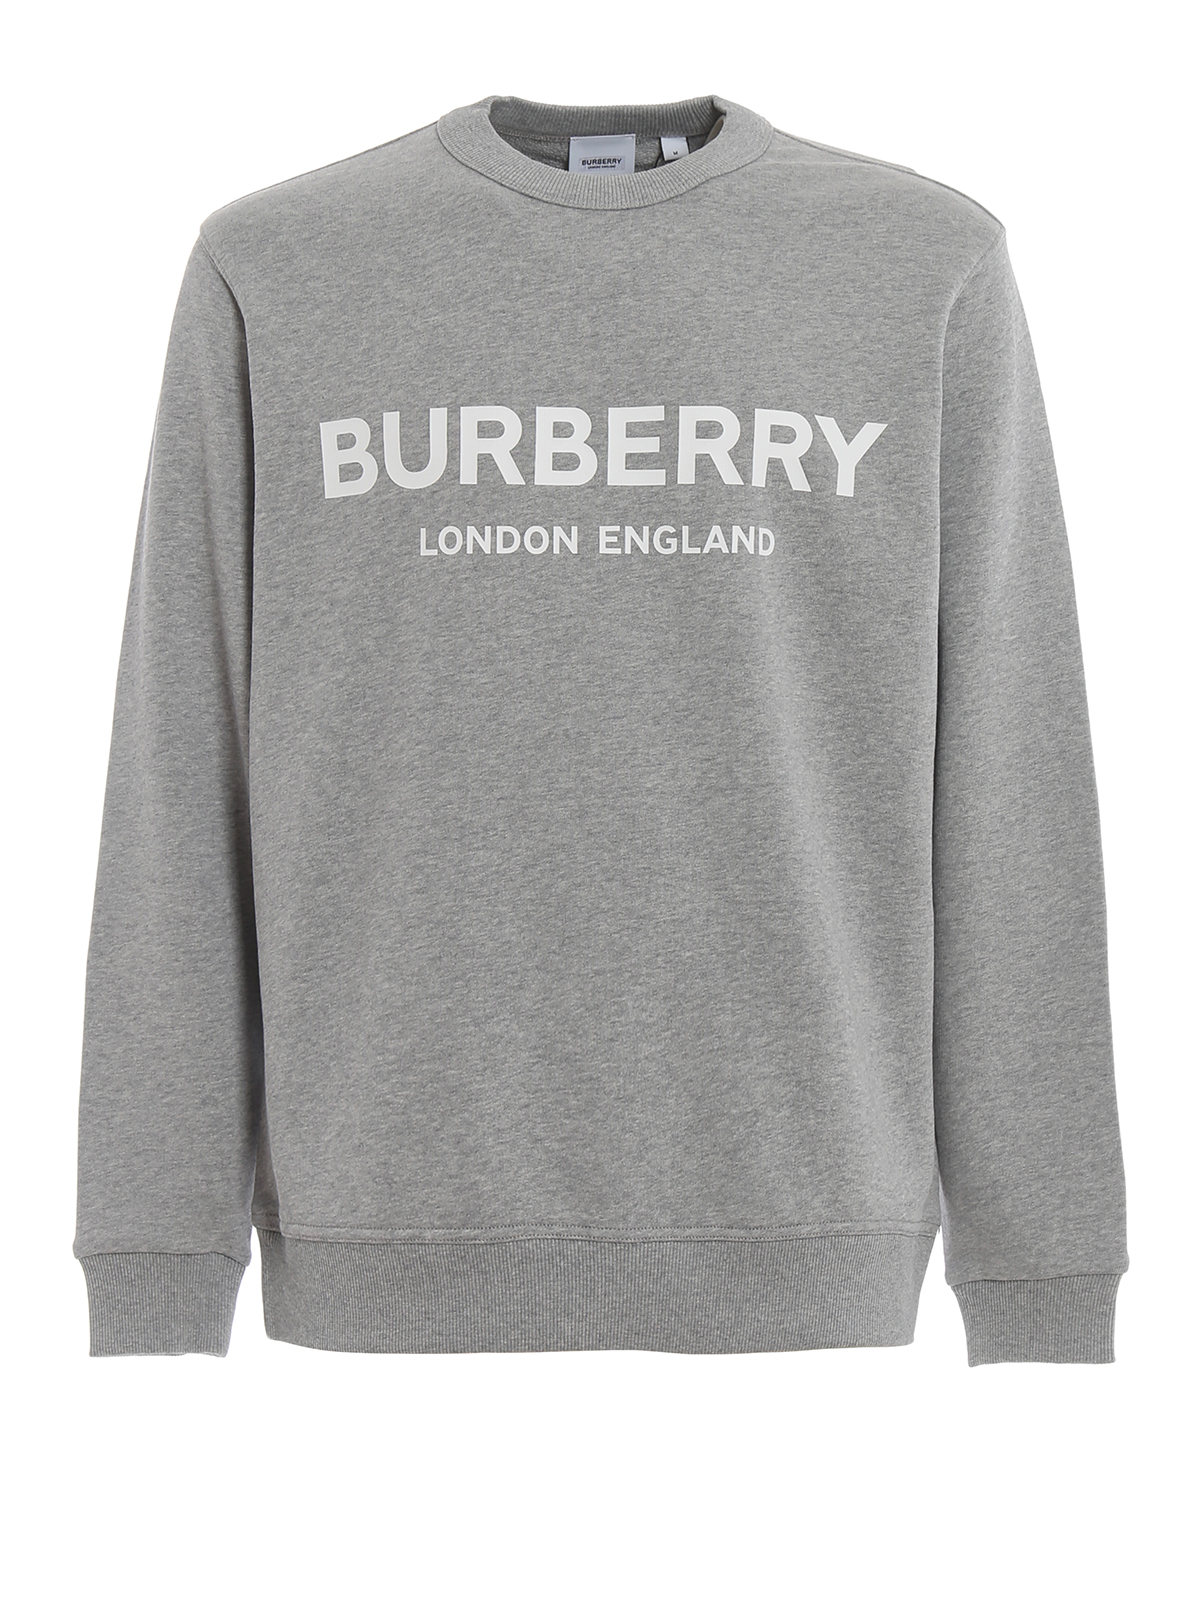 Arriba 53+ imagen grey burberry sweatshirt